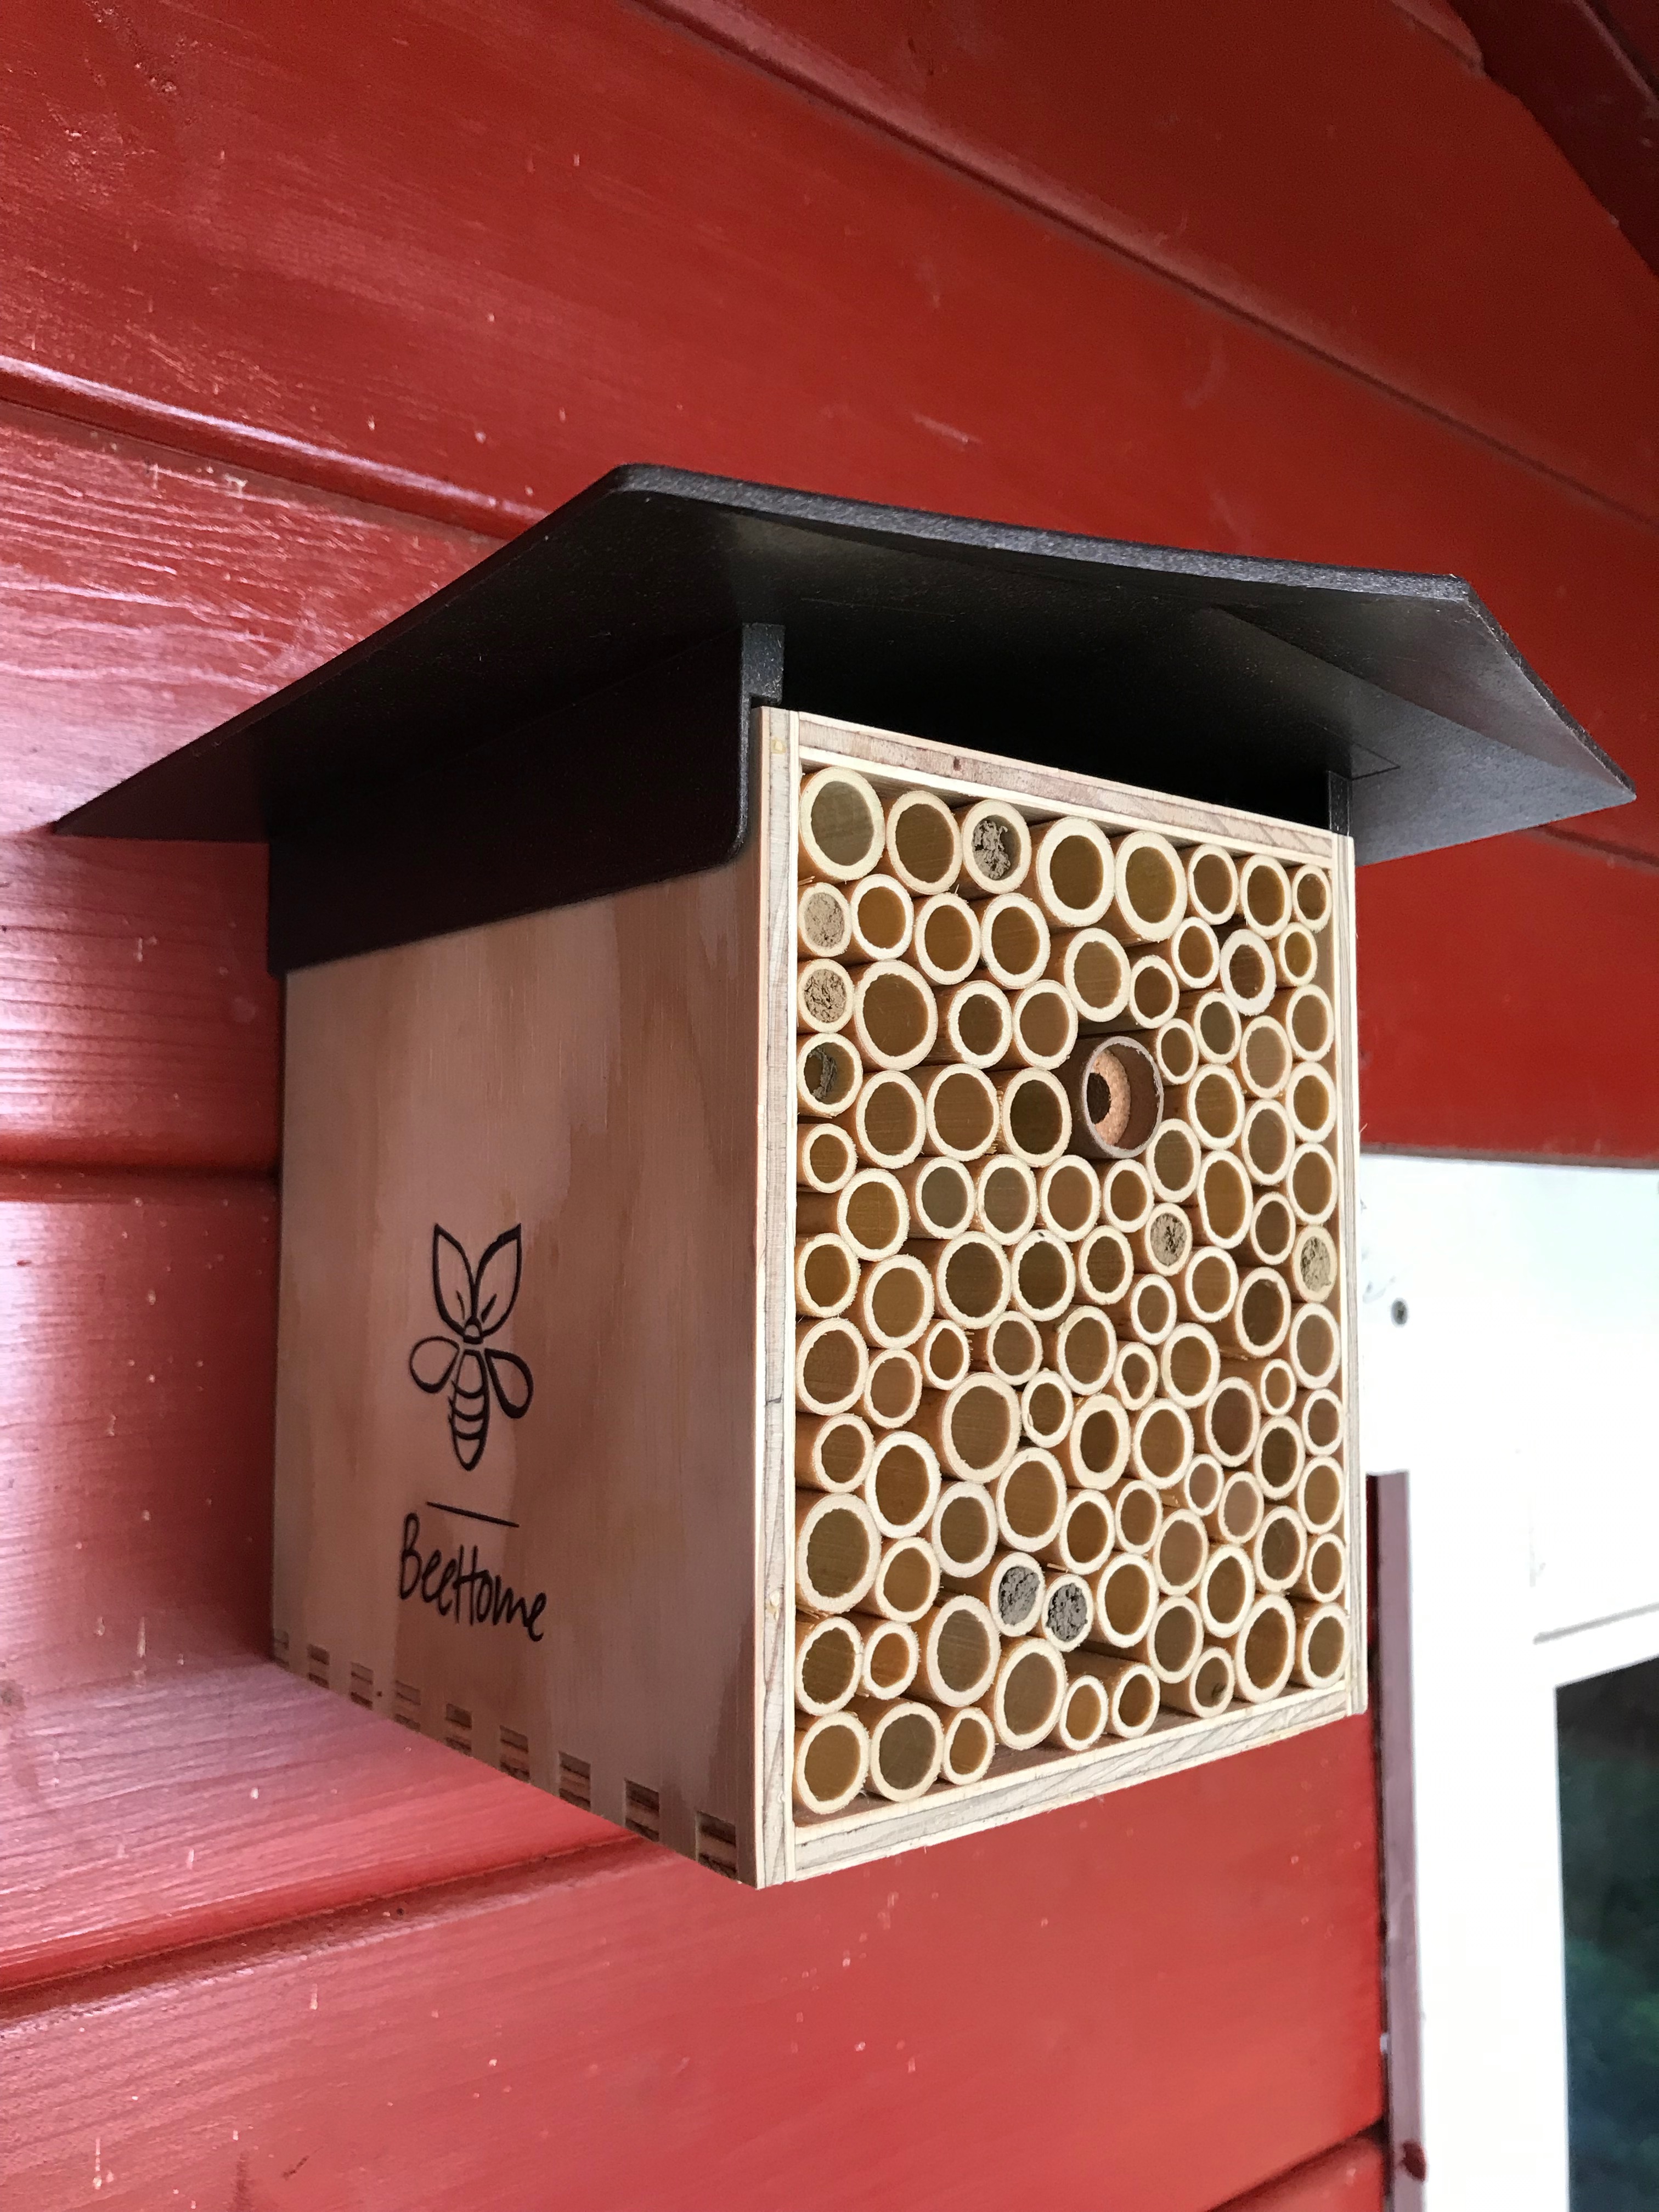 Wildbienen Nest an einer roten Hütte - Bienenschutz